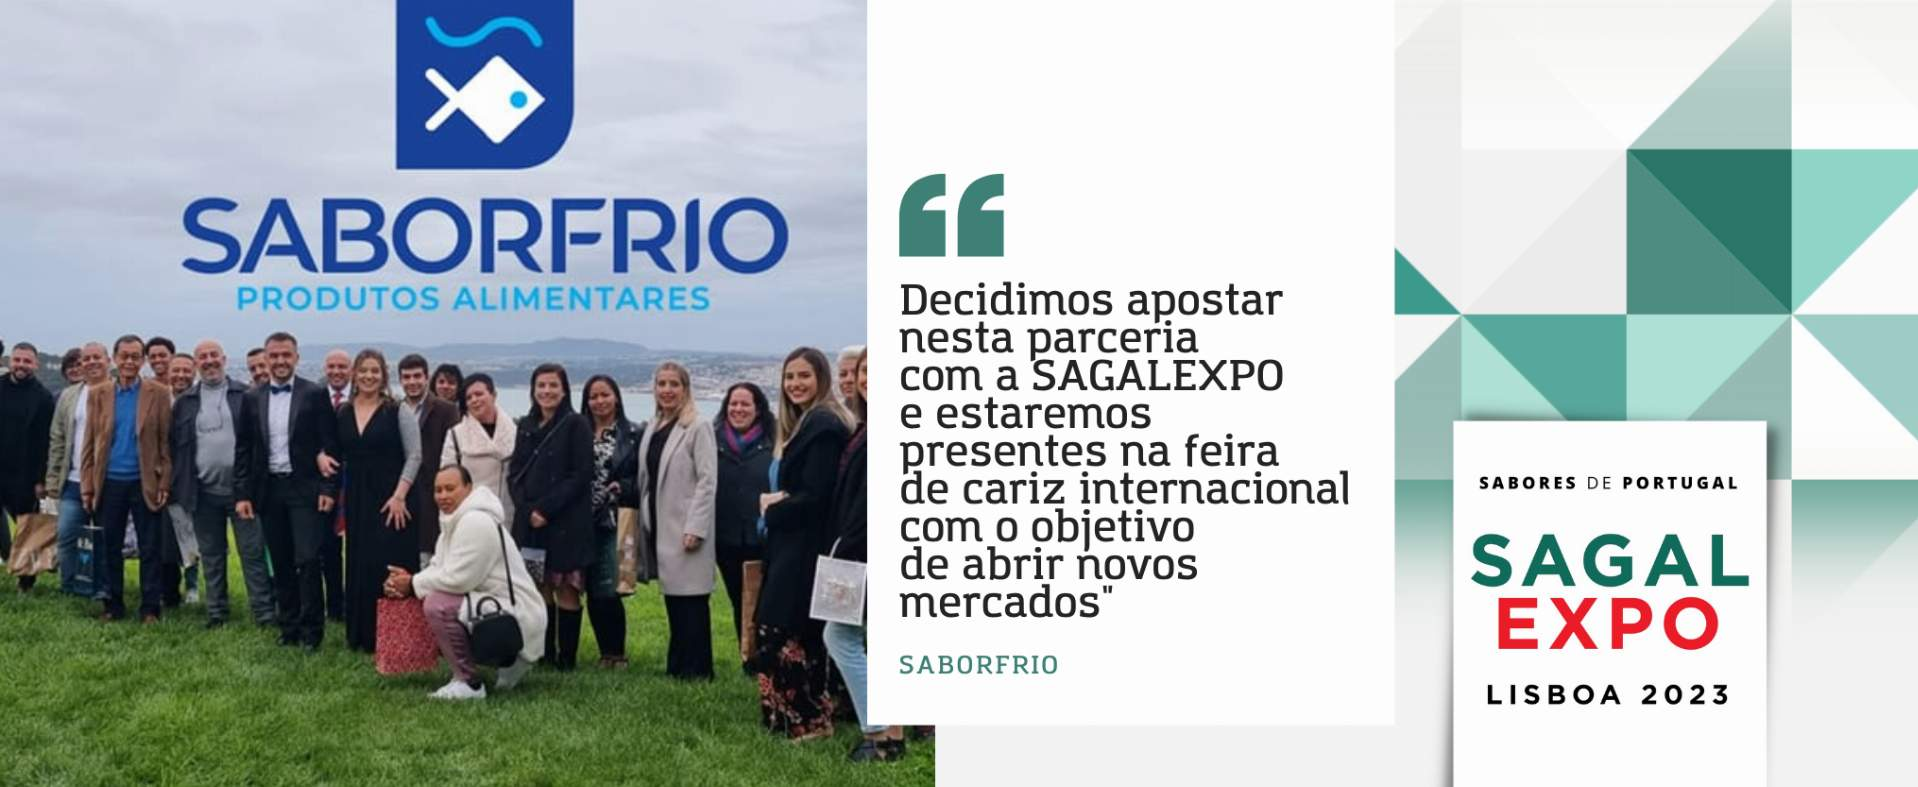 SaborFrio: “Decidimos apostar nesta parceria com a SAGAL EXPO e estaremos presentes na feira de cariz internacional com o objetivo de abrir novos mercados”